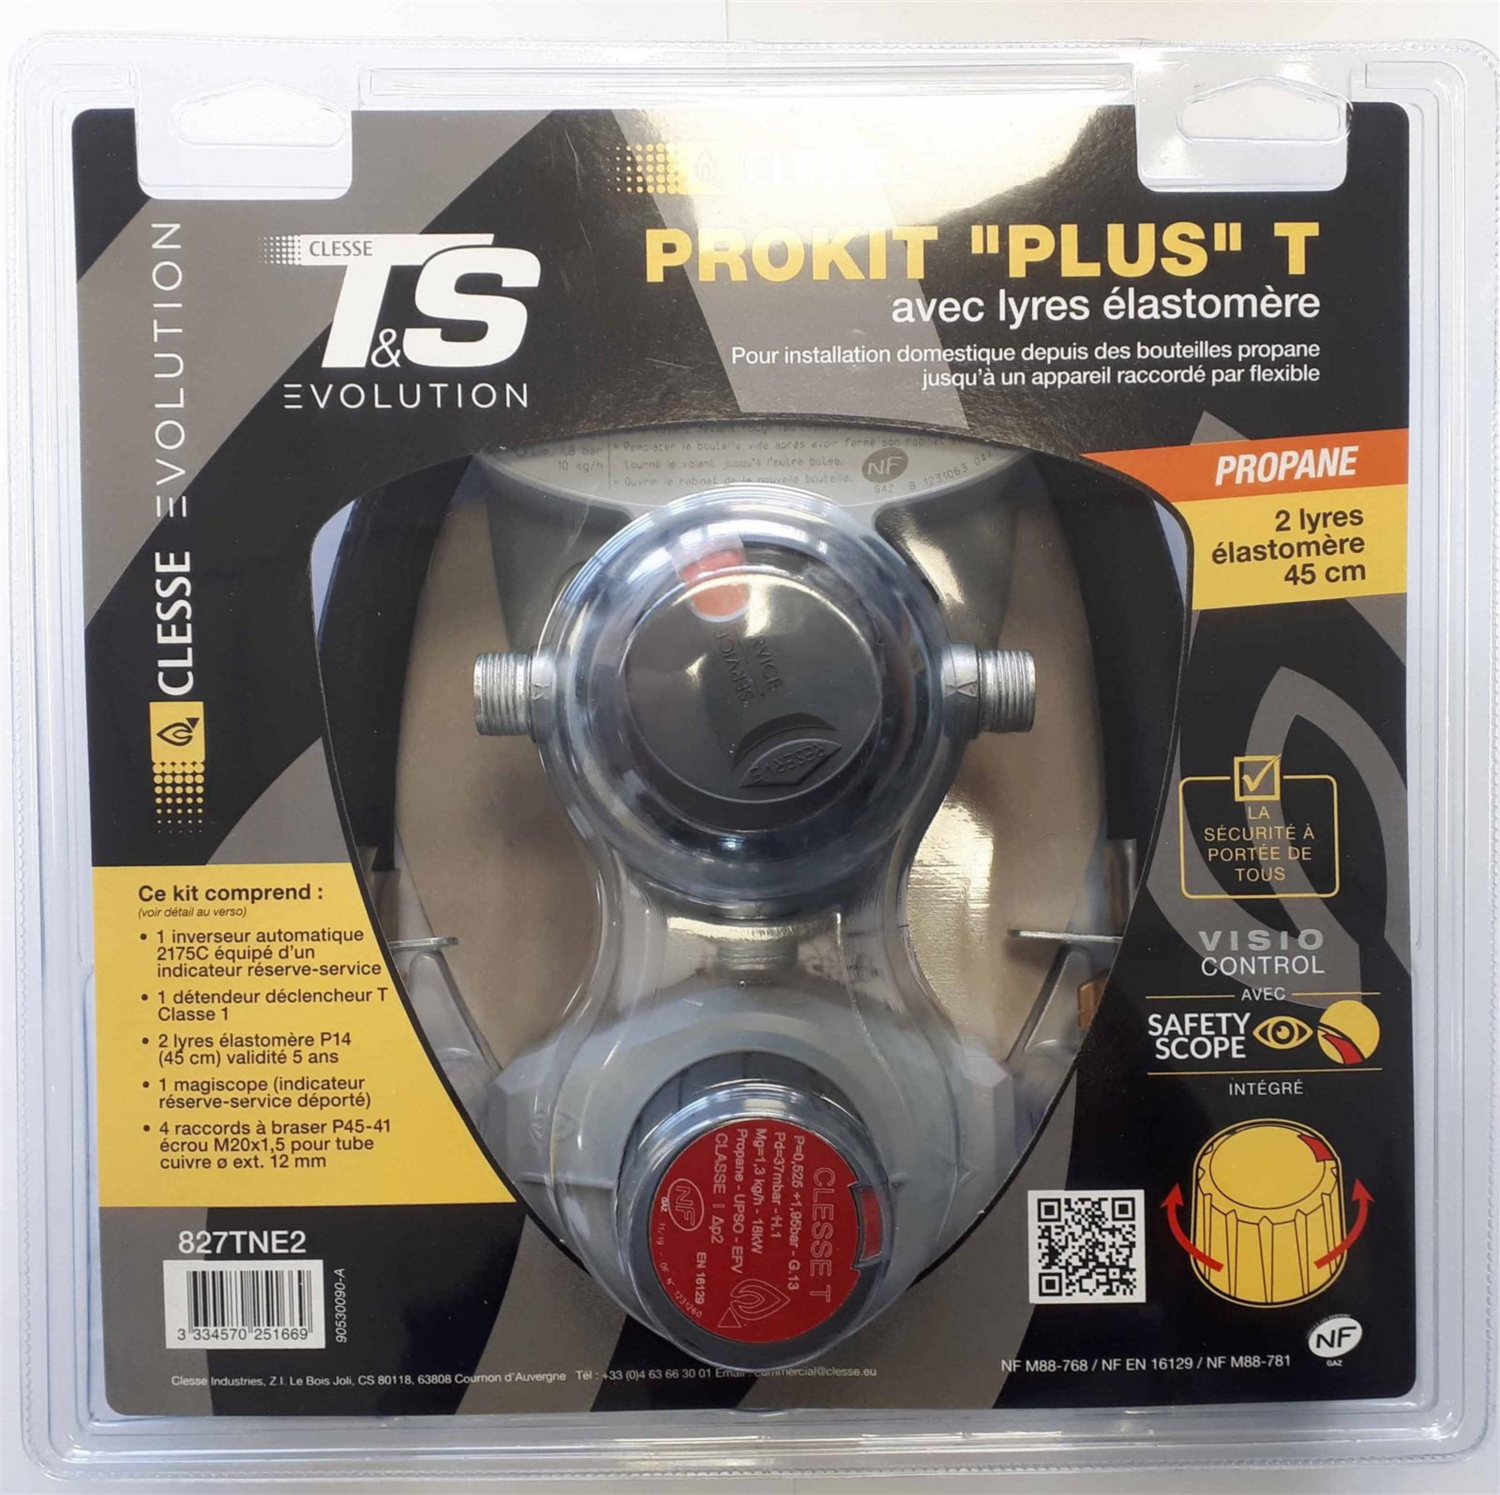 Inverseur automatique et détendeur - Prokit Plus S propane CLESSE